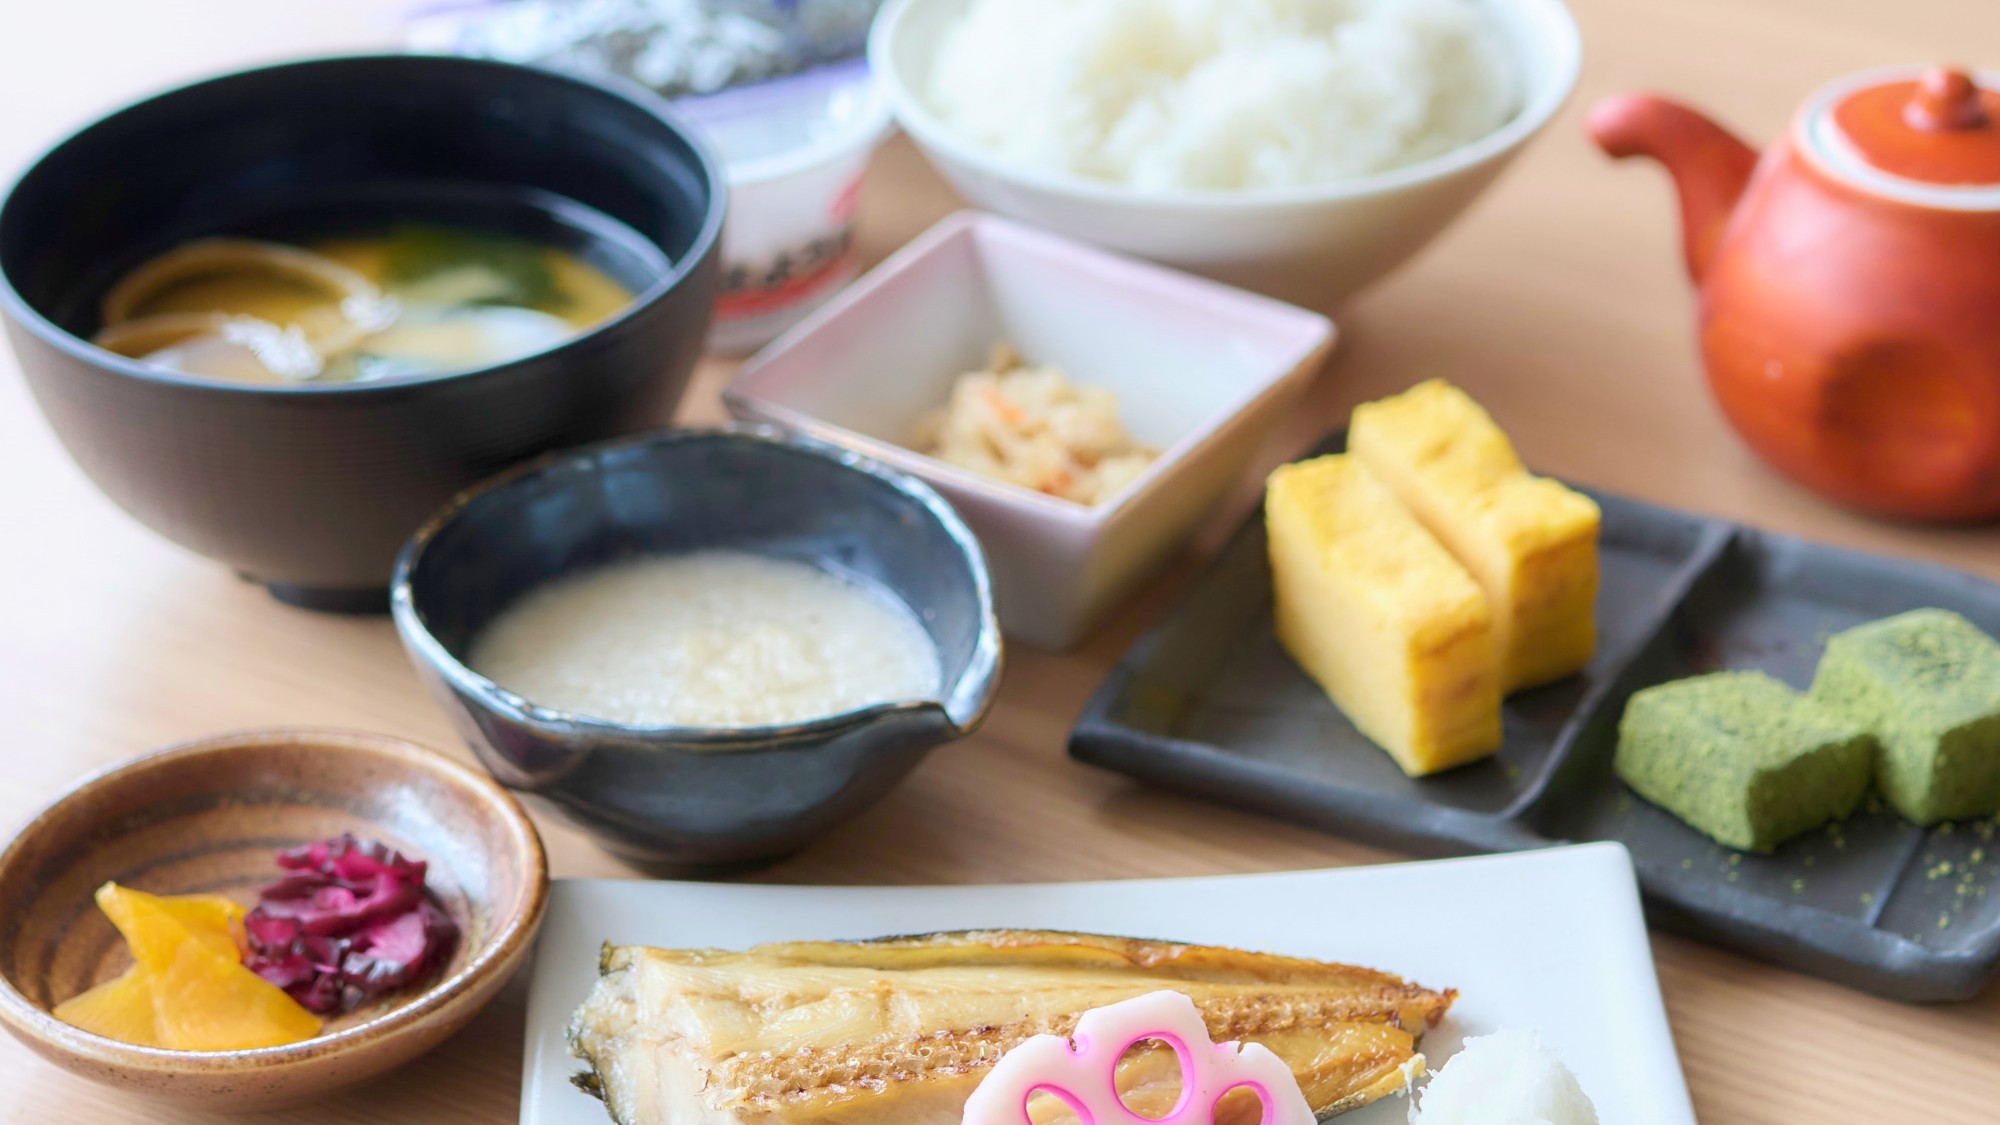 和朝食：毎朝炊き上げたご飯は「とても美味しい！」と常連様からも評判です。※写真は全てイメージです。